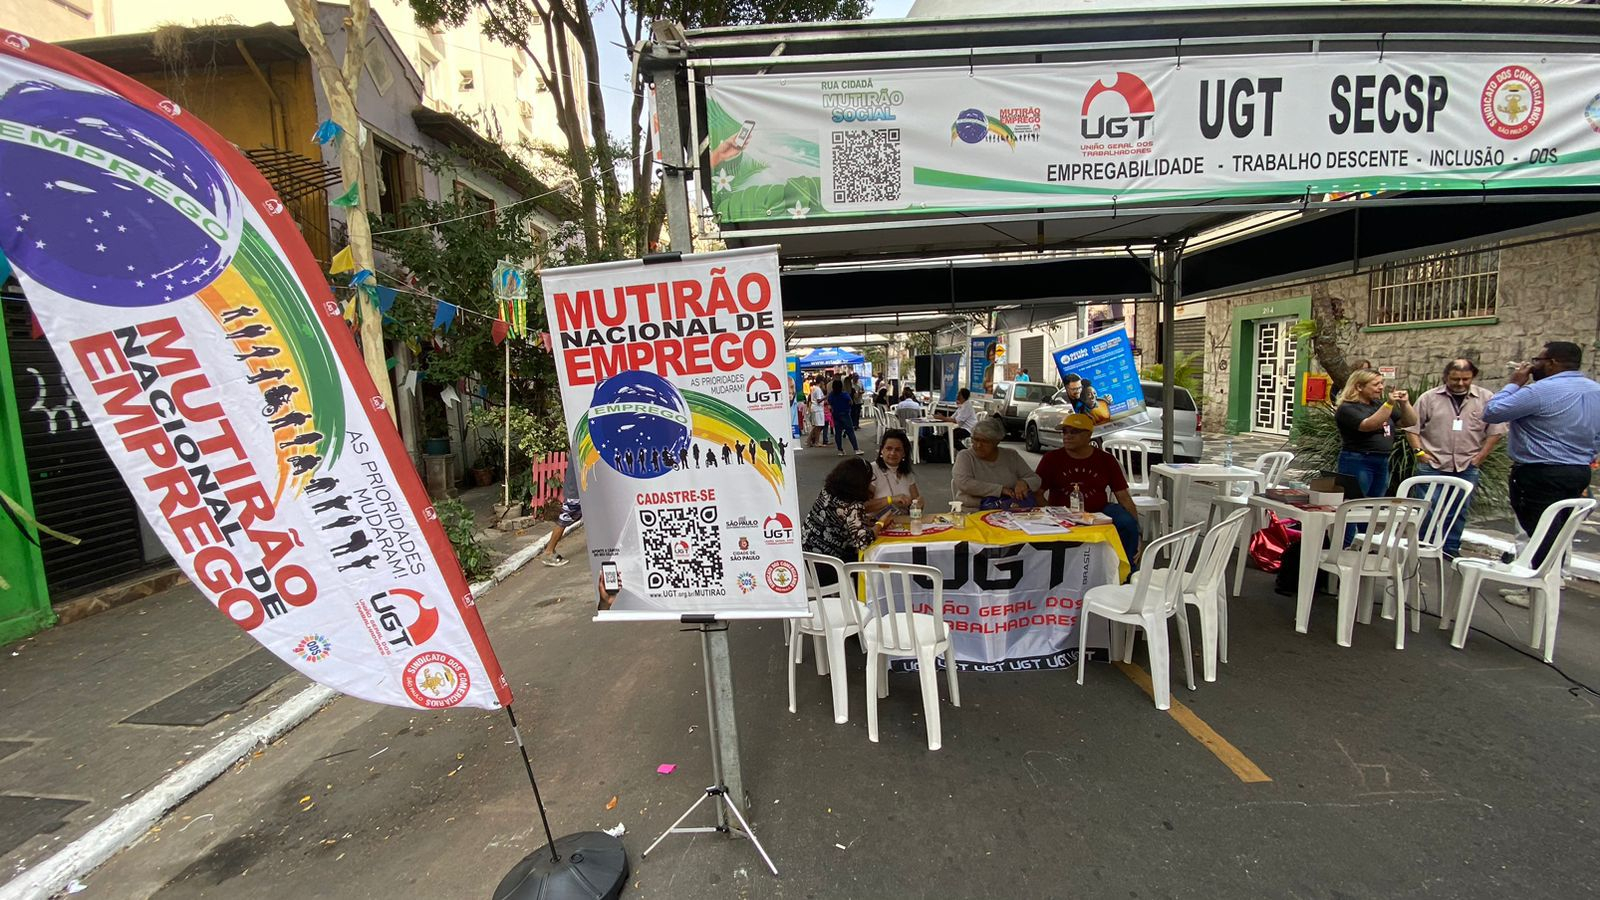 UGT e Sindicato dos Comerciários participam de Mutirão Solidário na Rua Rocha com Ênfase na Inclusão Social e Empregabilidade